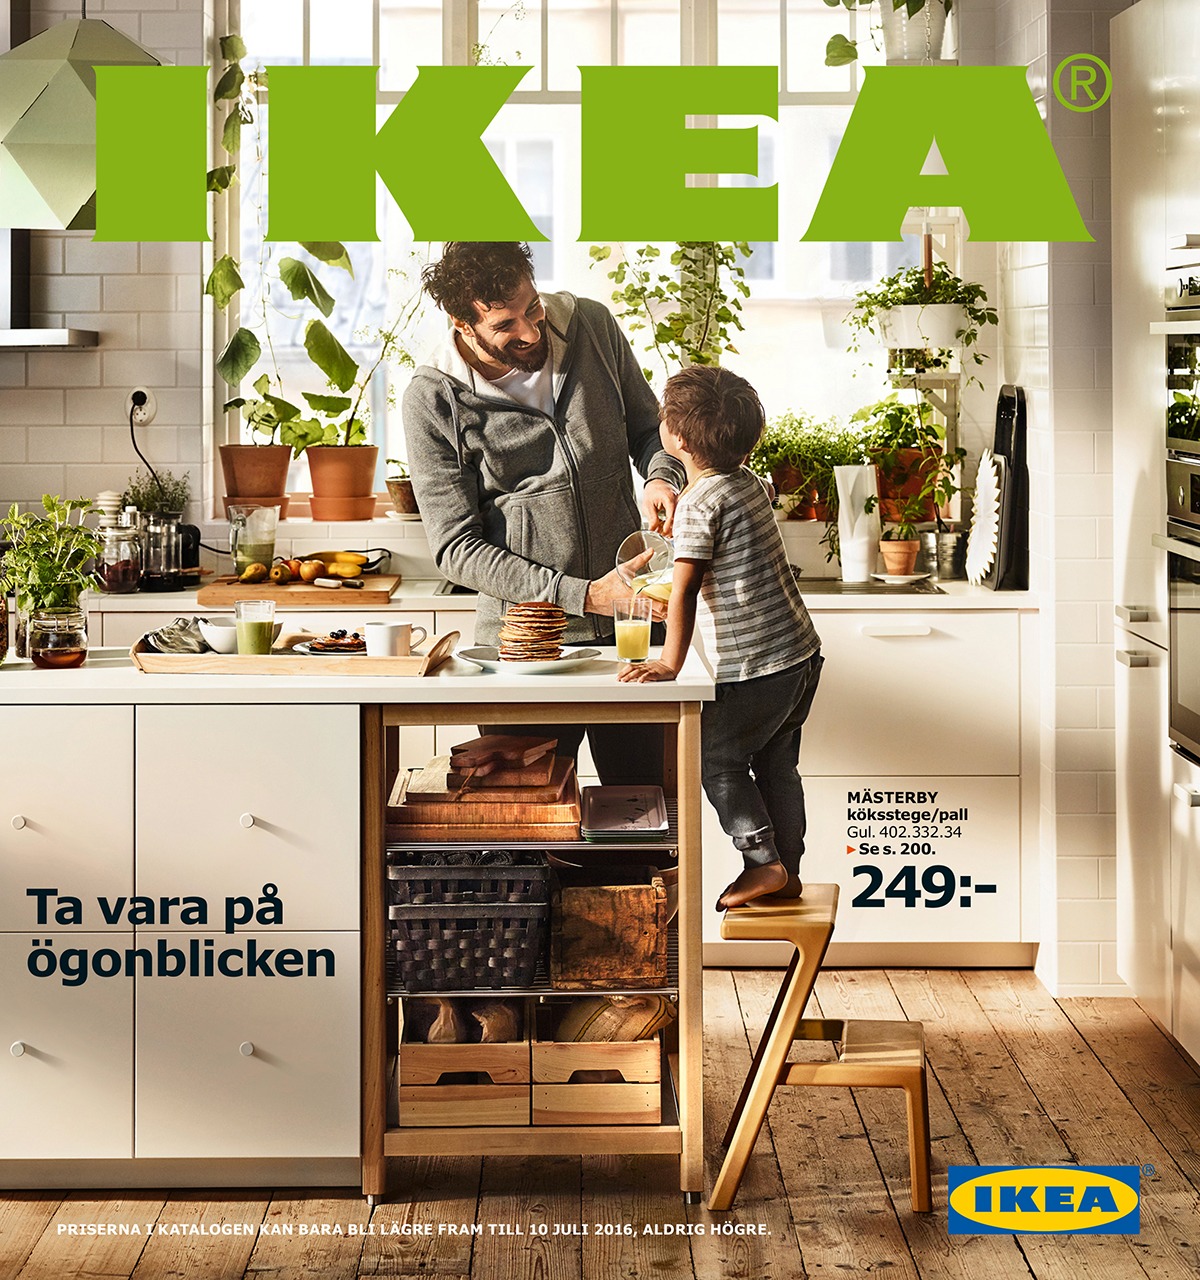 scheepsbouw lood waardigheid Browse the IKEA catalogue from 2016 - IKEA Museum